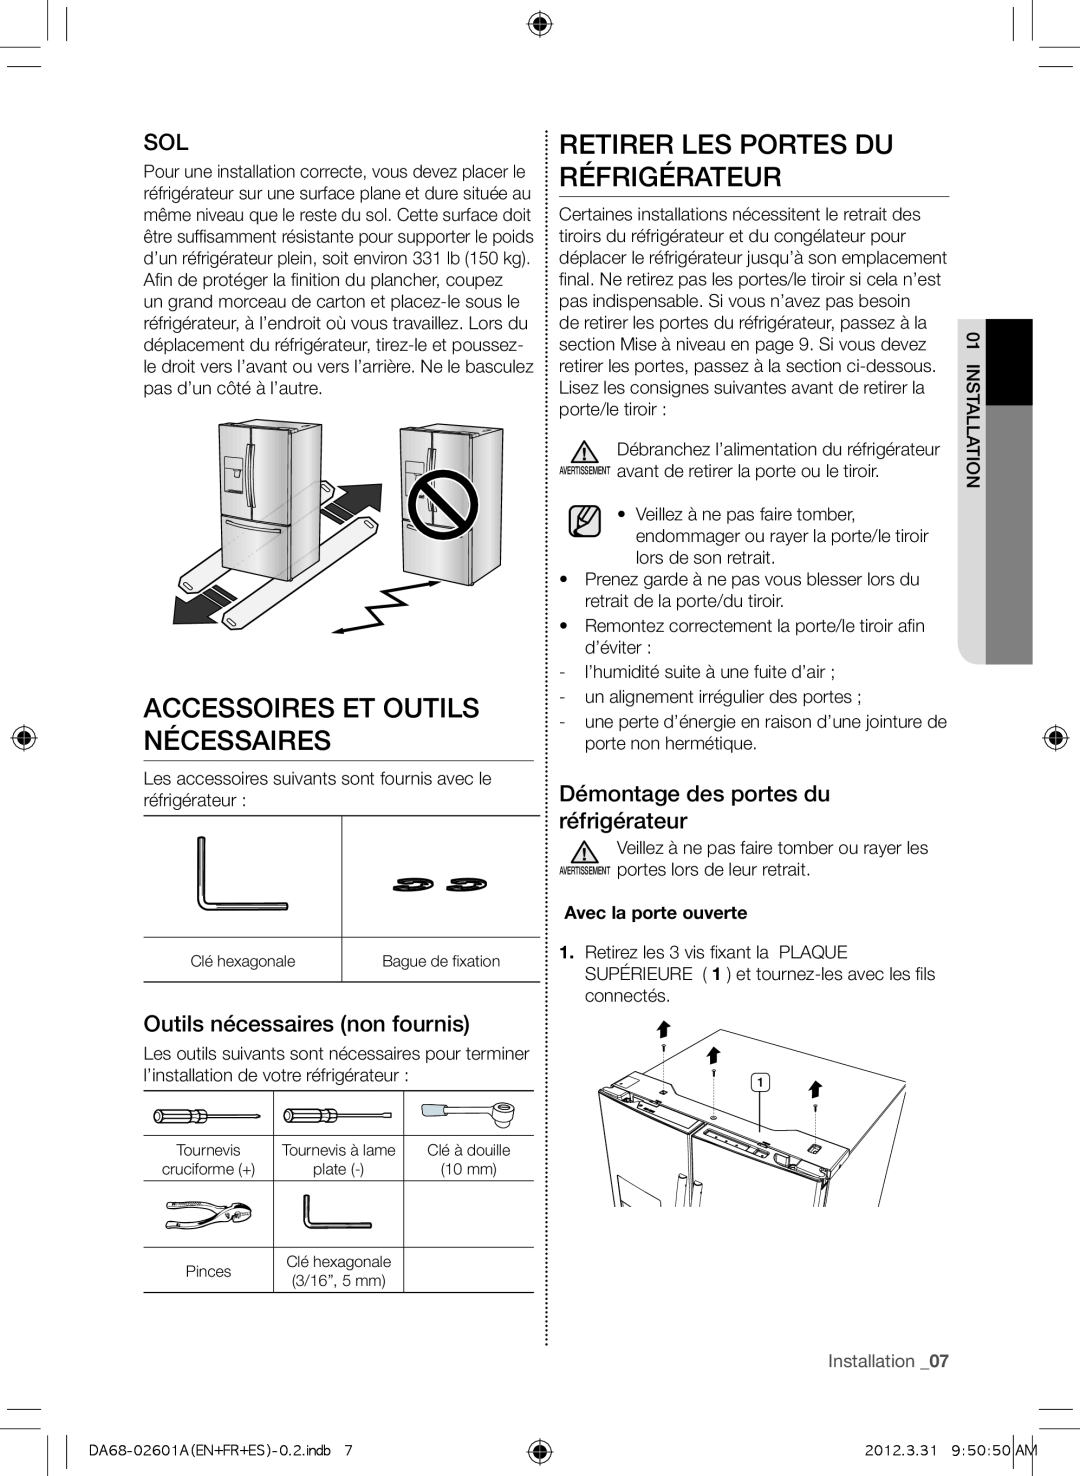 Samsung RF263BEAEWW Accessoires et outils nécessaires, Retirer les portes du réfrigérateur, Outils nécessaires non fournis 